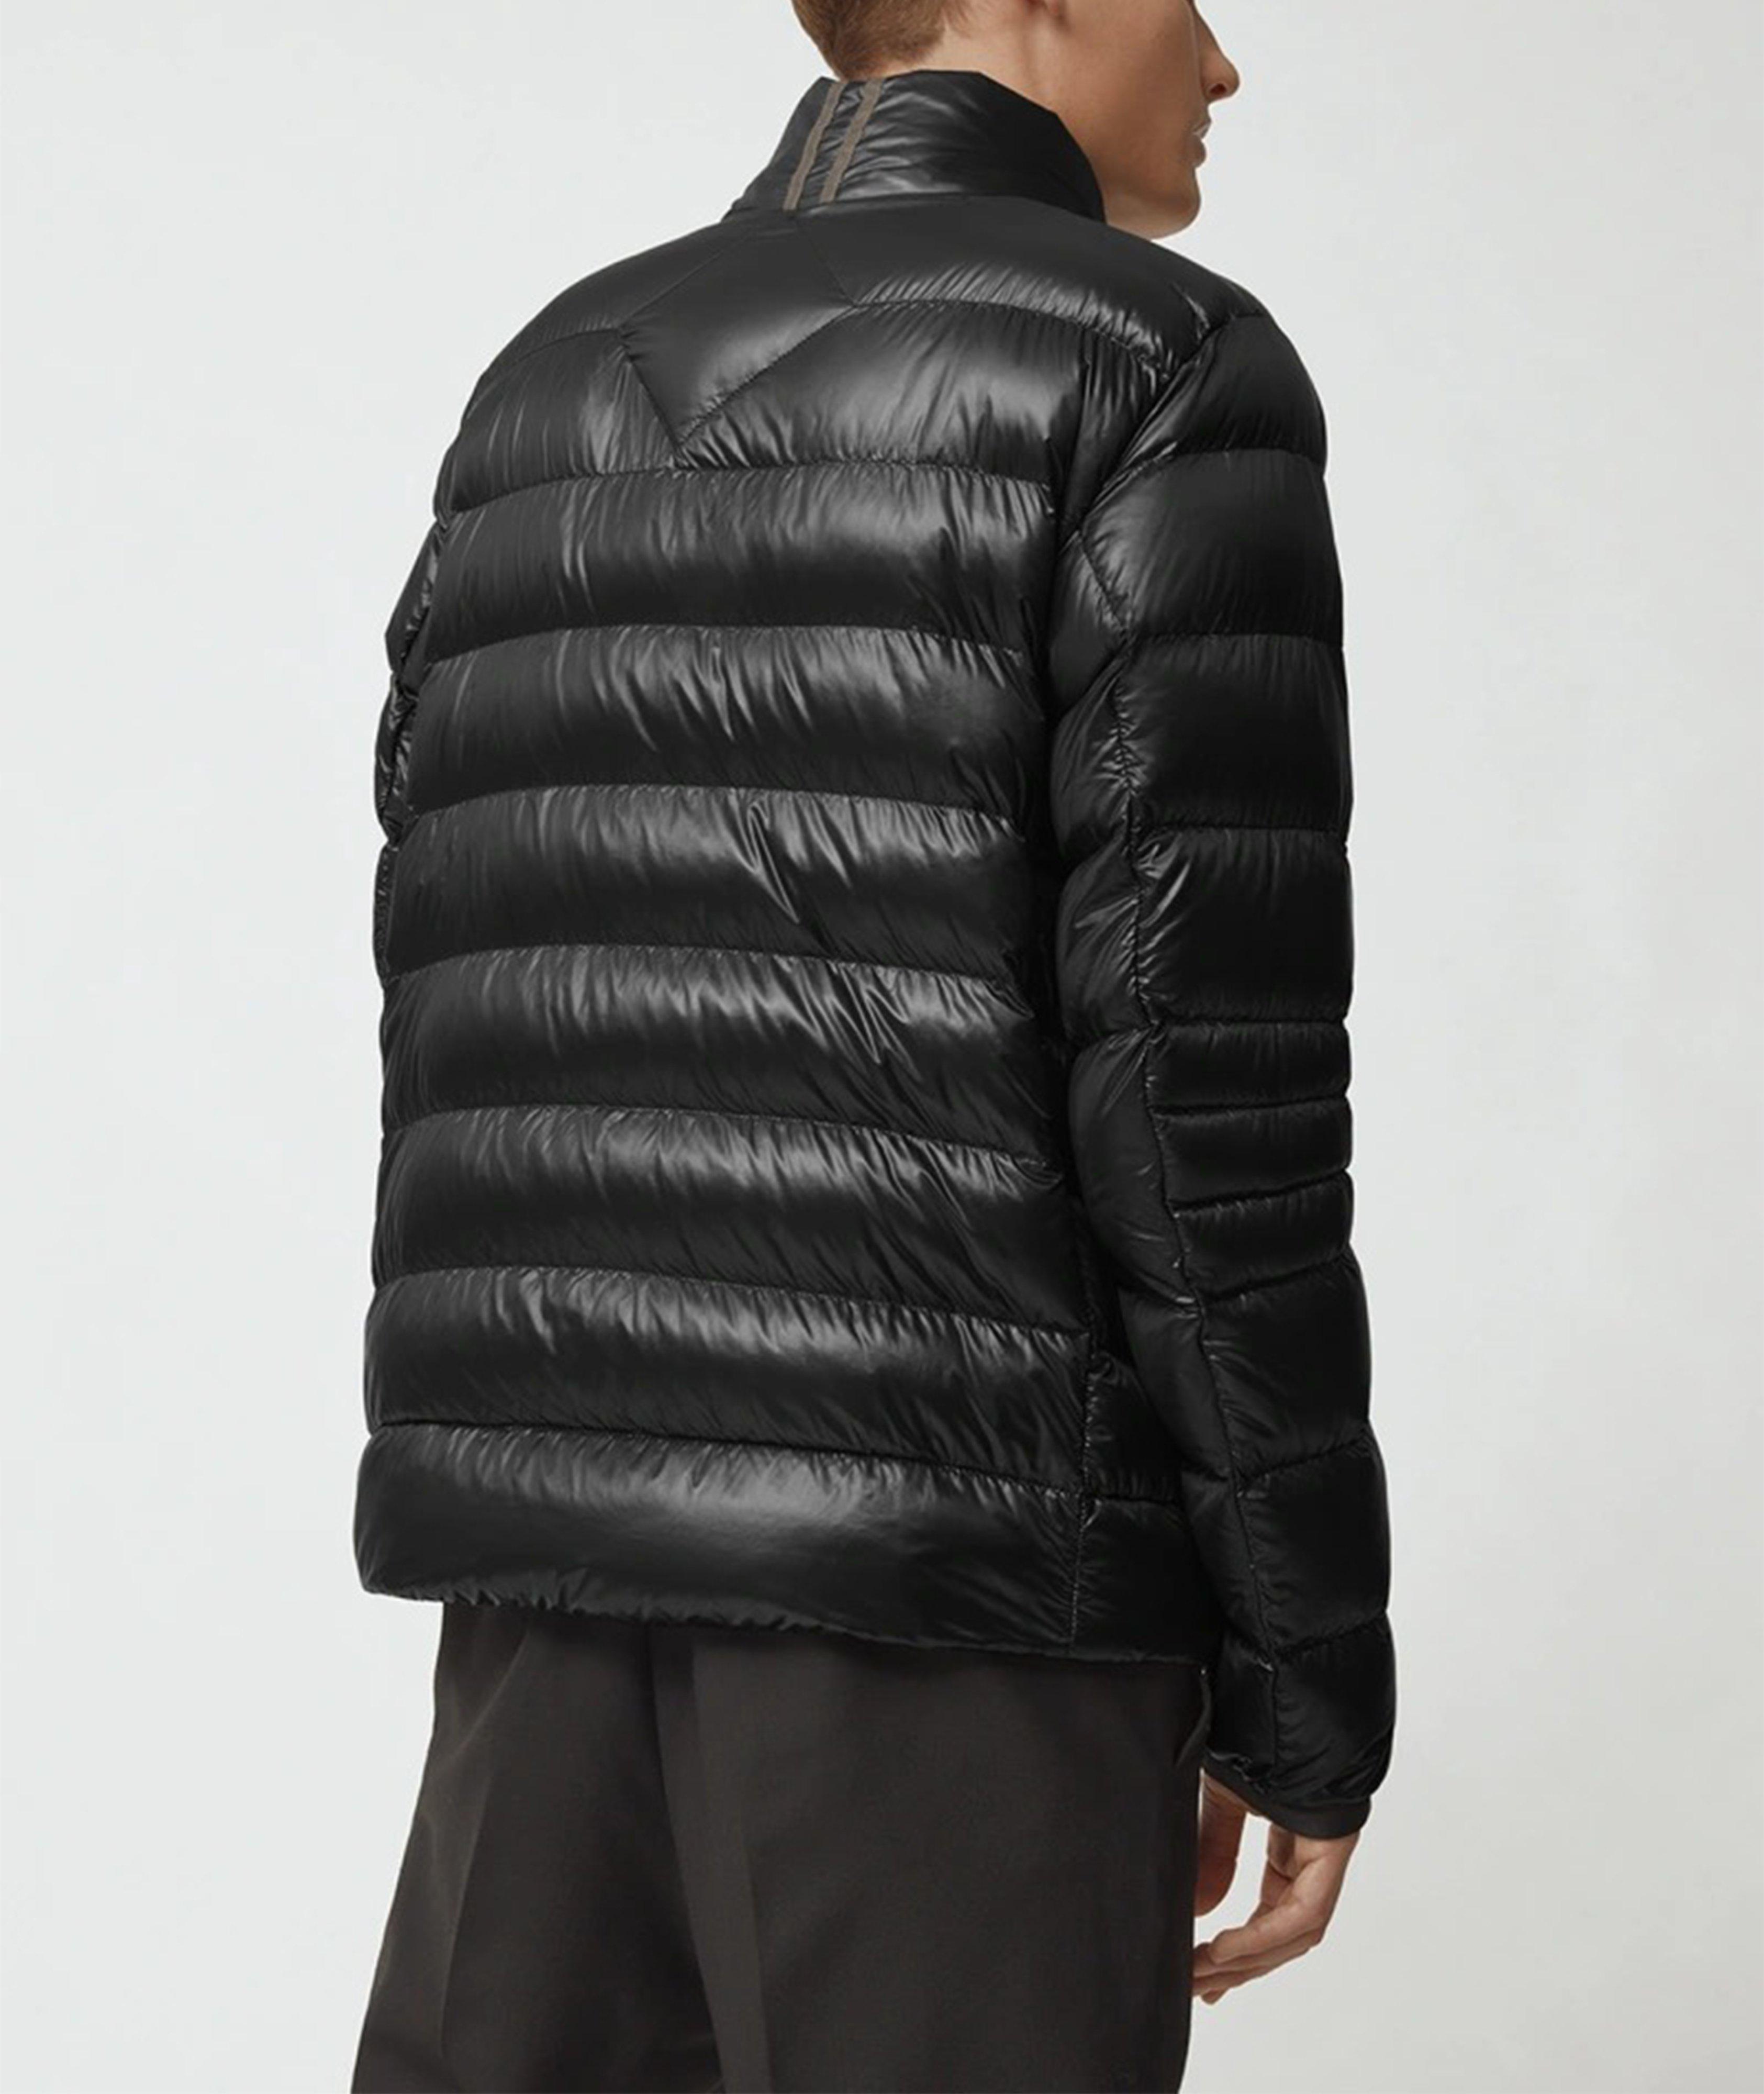 Manteau de duvet Crofton, collection Black Label image 3